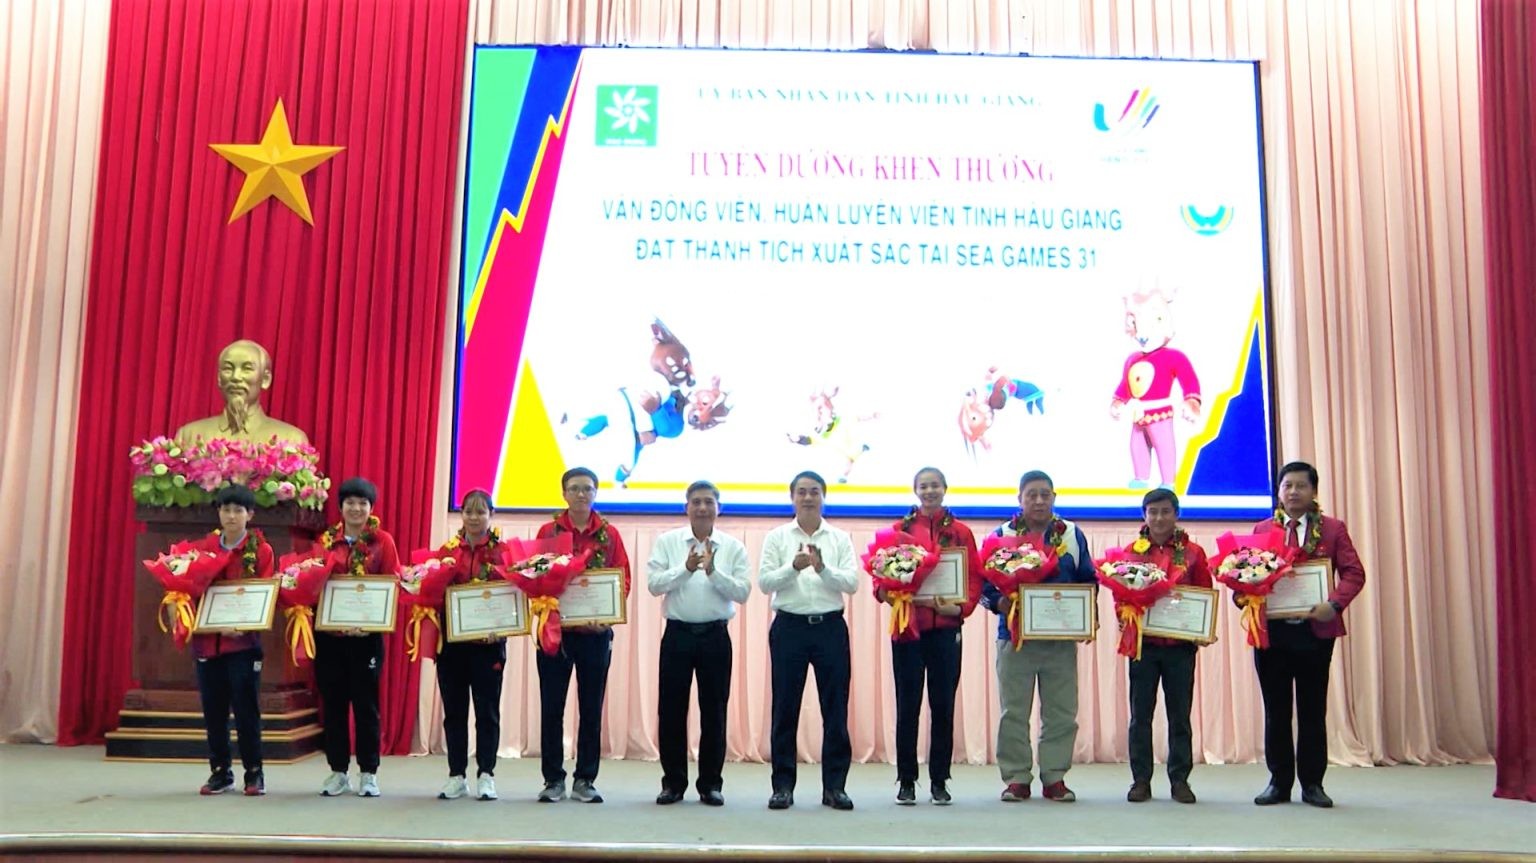 Bí thư Tỉnh ủy và Chủ tịch UBND tỉnh Hậu Giang tặng bằng khen cho các vận động viên, huấn luyện viên đạt thành tích xuất sắc tại SEA Games 31. 